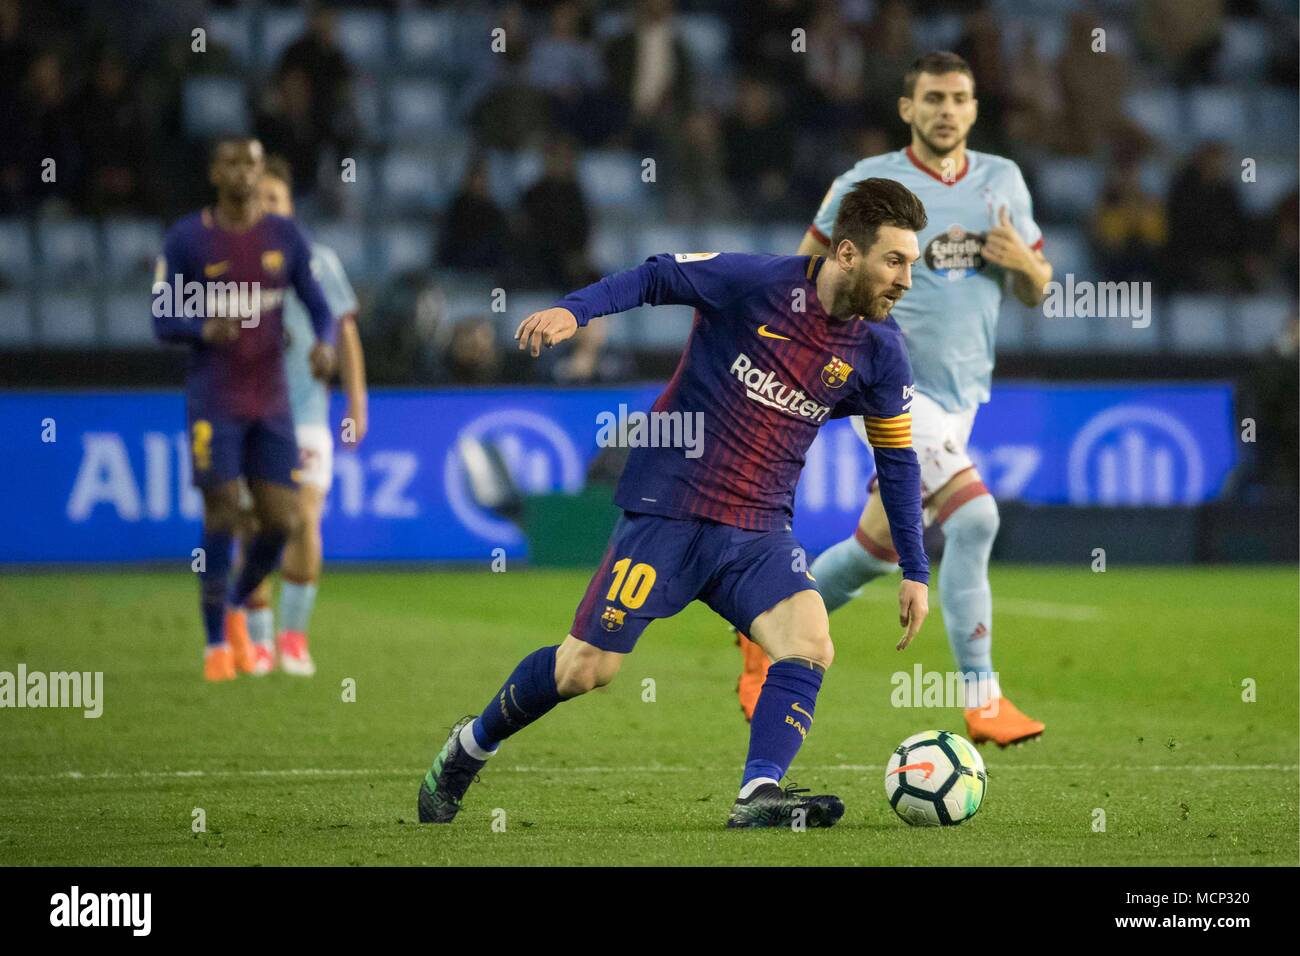 Lionel Messi de Barcelona durante un partido de fútbol de la Liga española entre el RC Celta y Barcelona en el estadio de Balaidos, en Vigo, España, Martes de